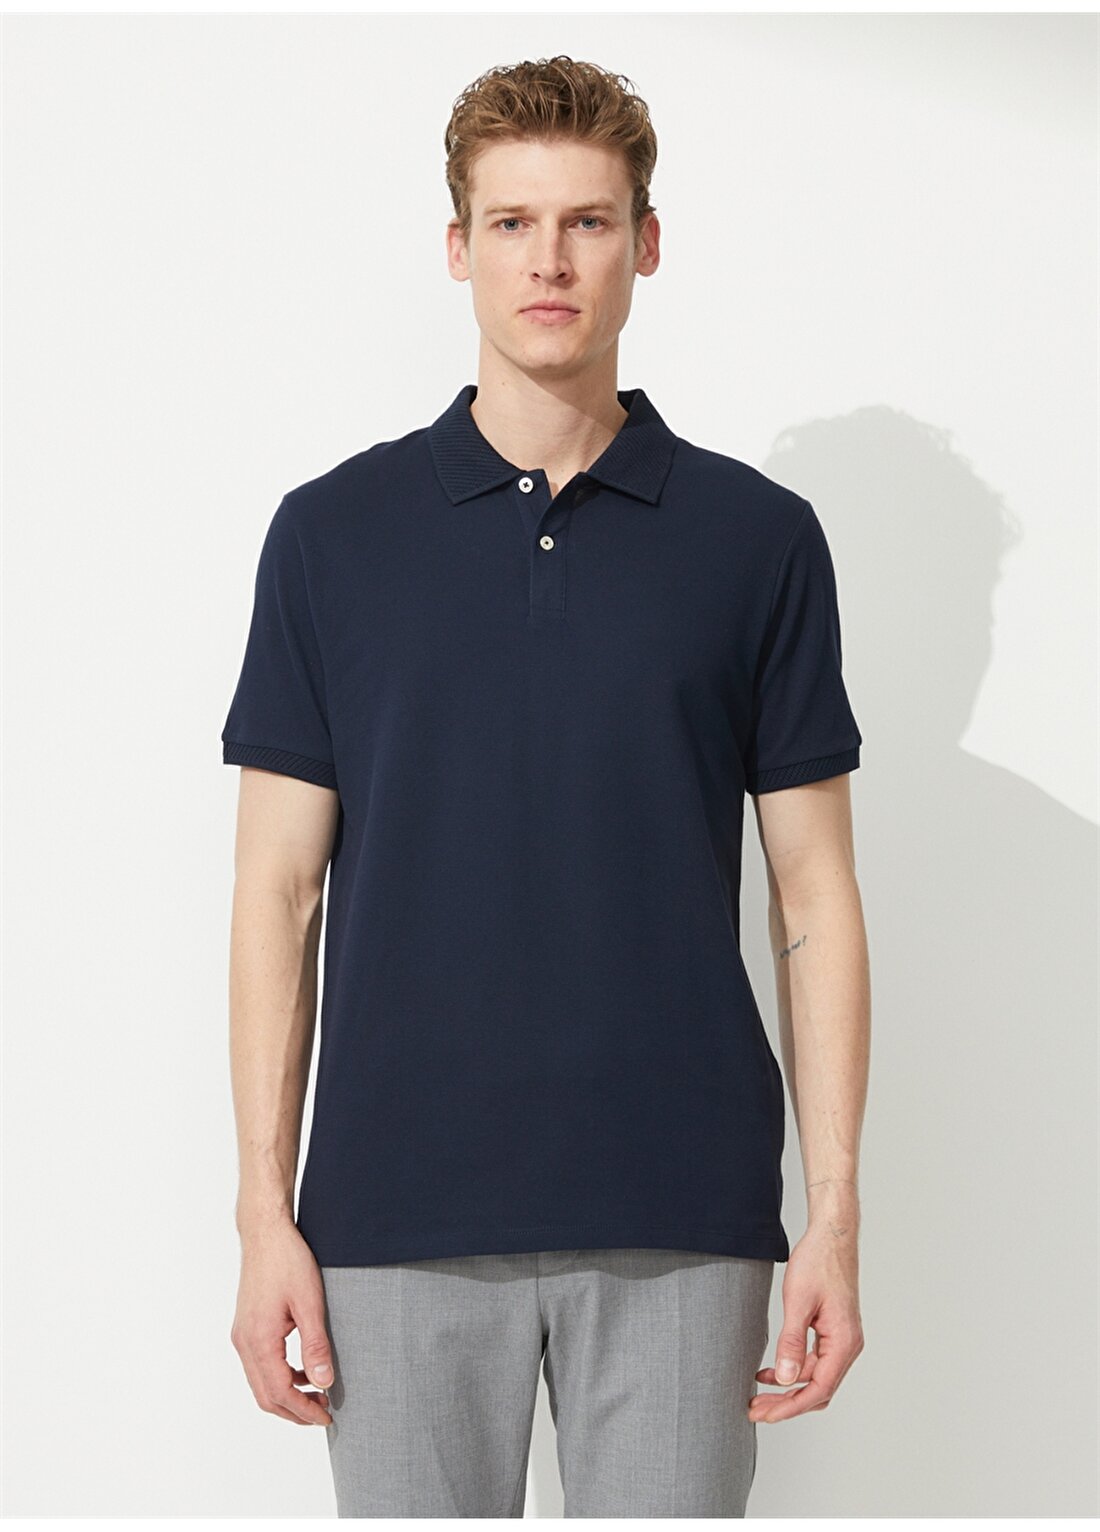 Altınyıldız Classics Koyu Lacivert Erkek Polo T-Shirt 4A9000000001